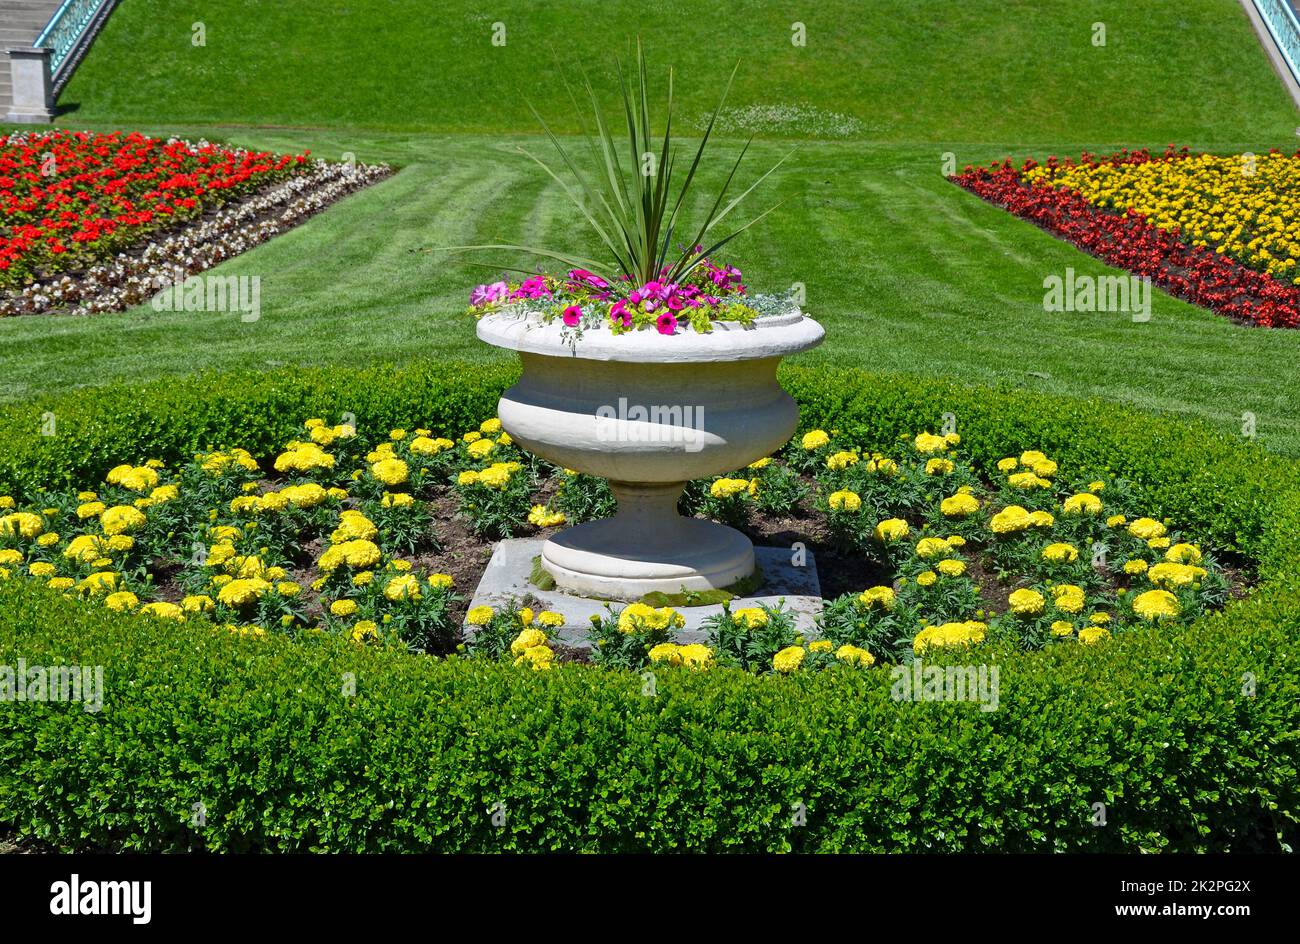 Farbenfrohe Pflanzmaschine für den Gartenpark Stockfoto